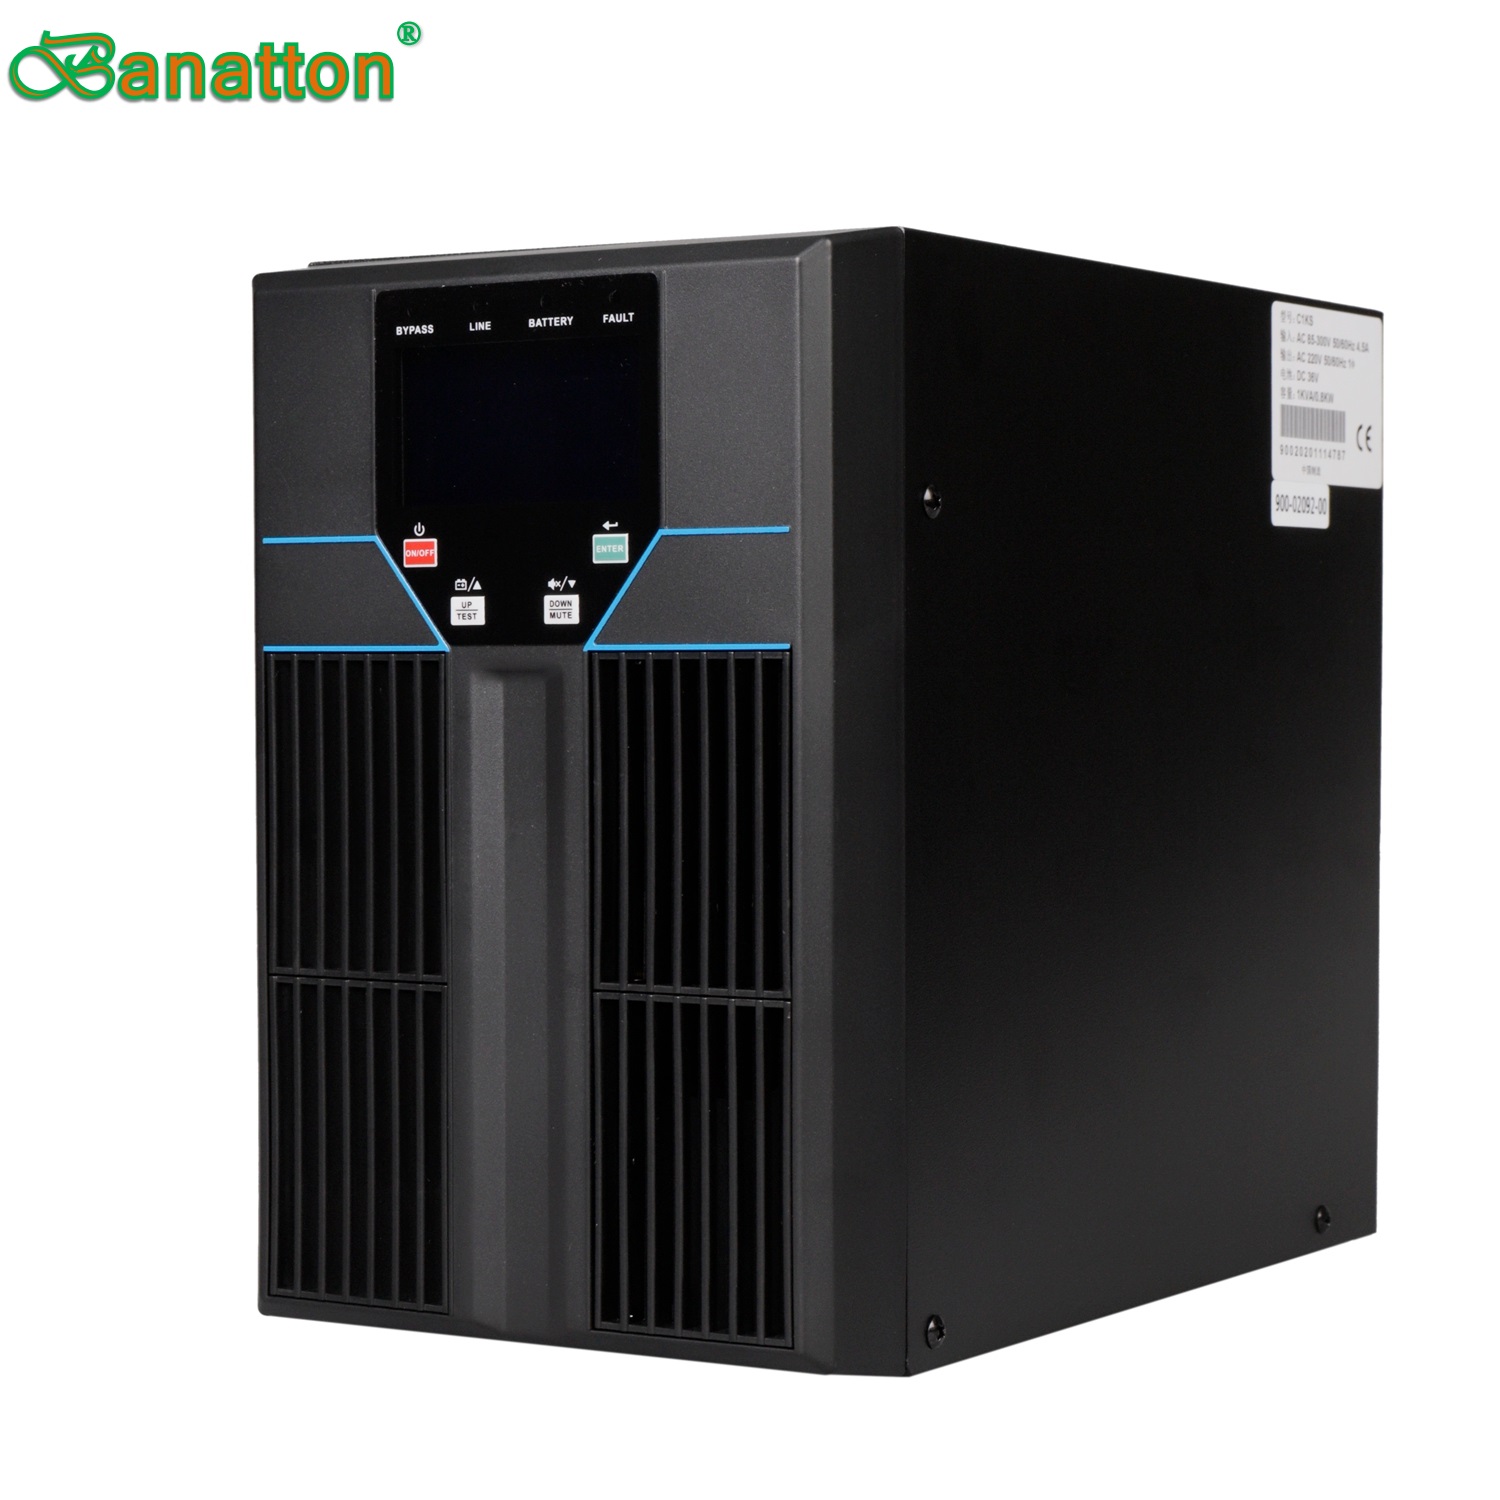 Banatton 1~3K-Li 온라인 UPS 리튬 이온 배터리 220V/230V/240V PF0.9 IEC62040 무정전 전원 공급 장치